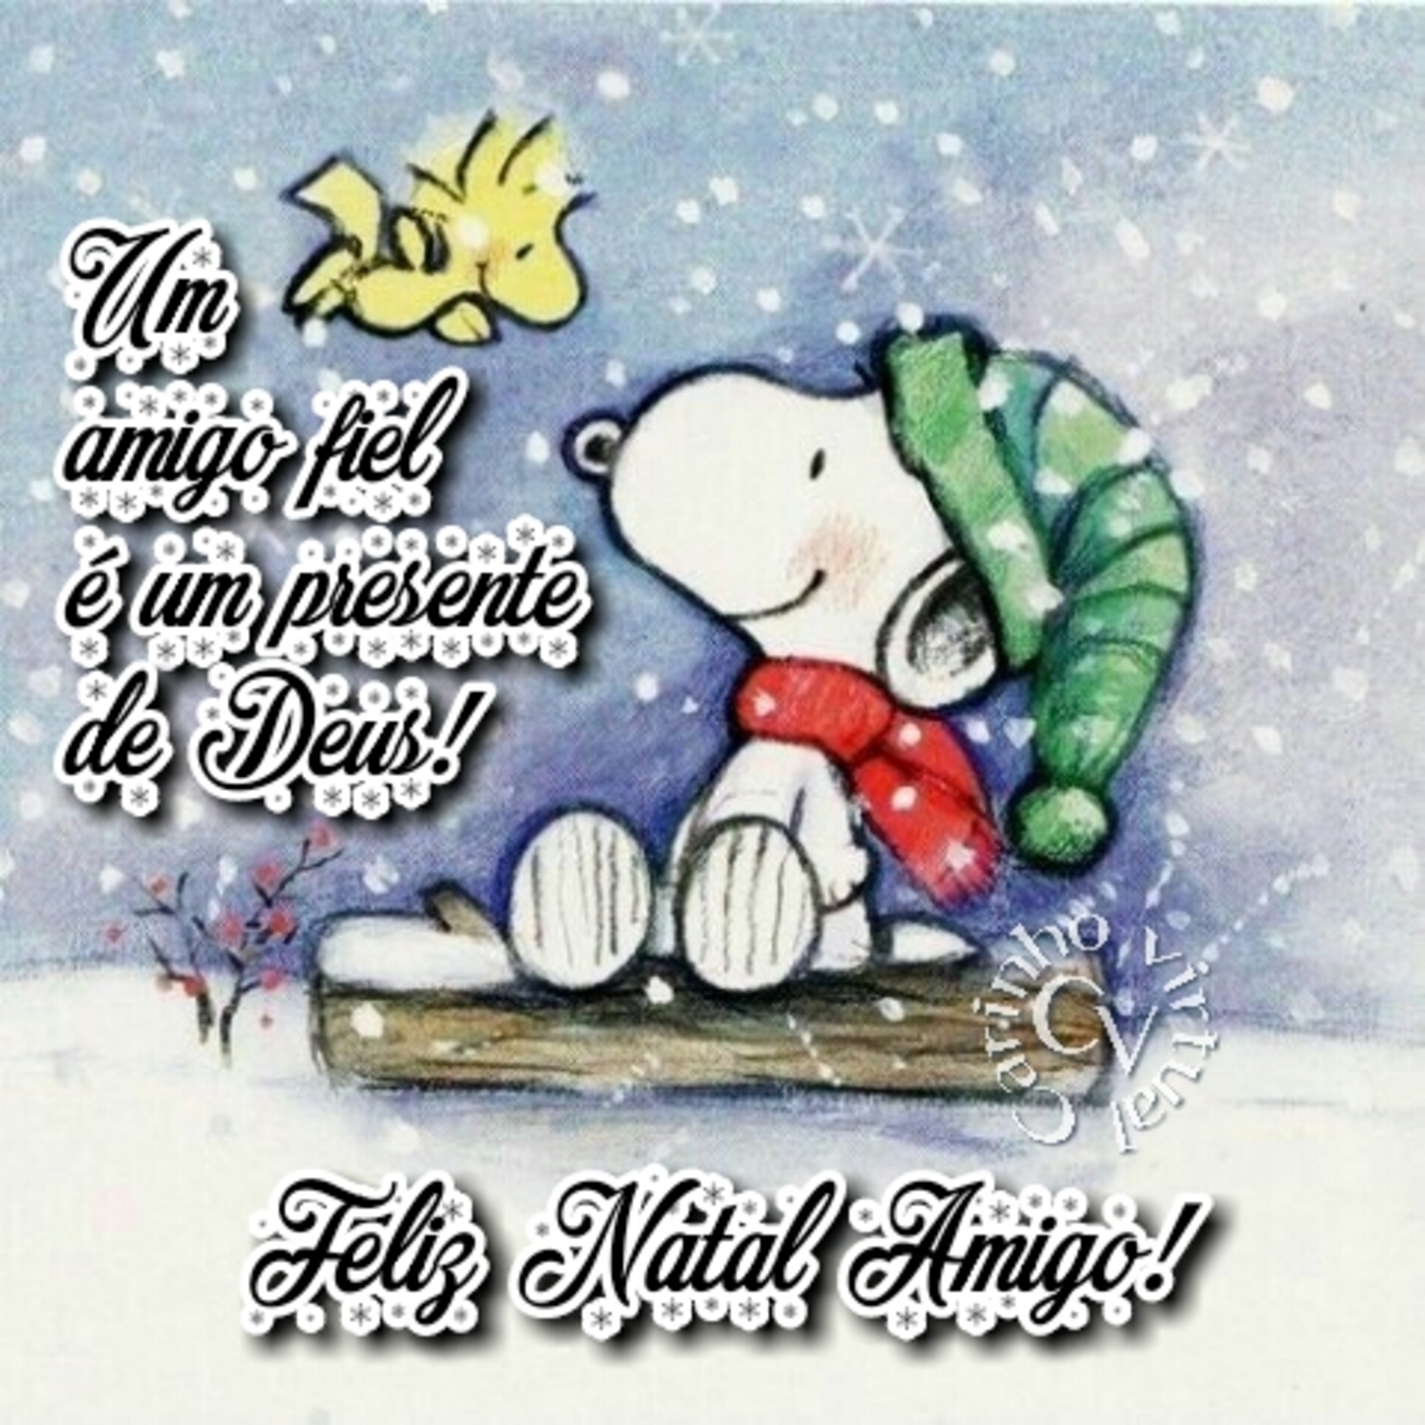 Um amigo fiel é um presente de Deus Feliz Natal Amigo Snoopy